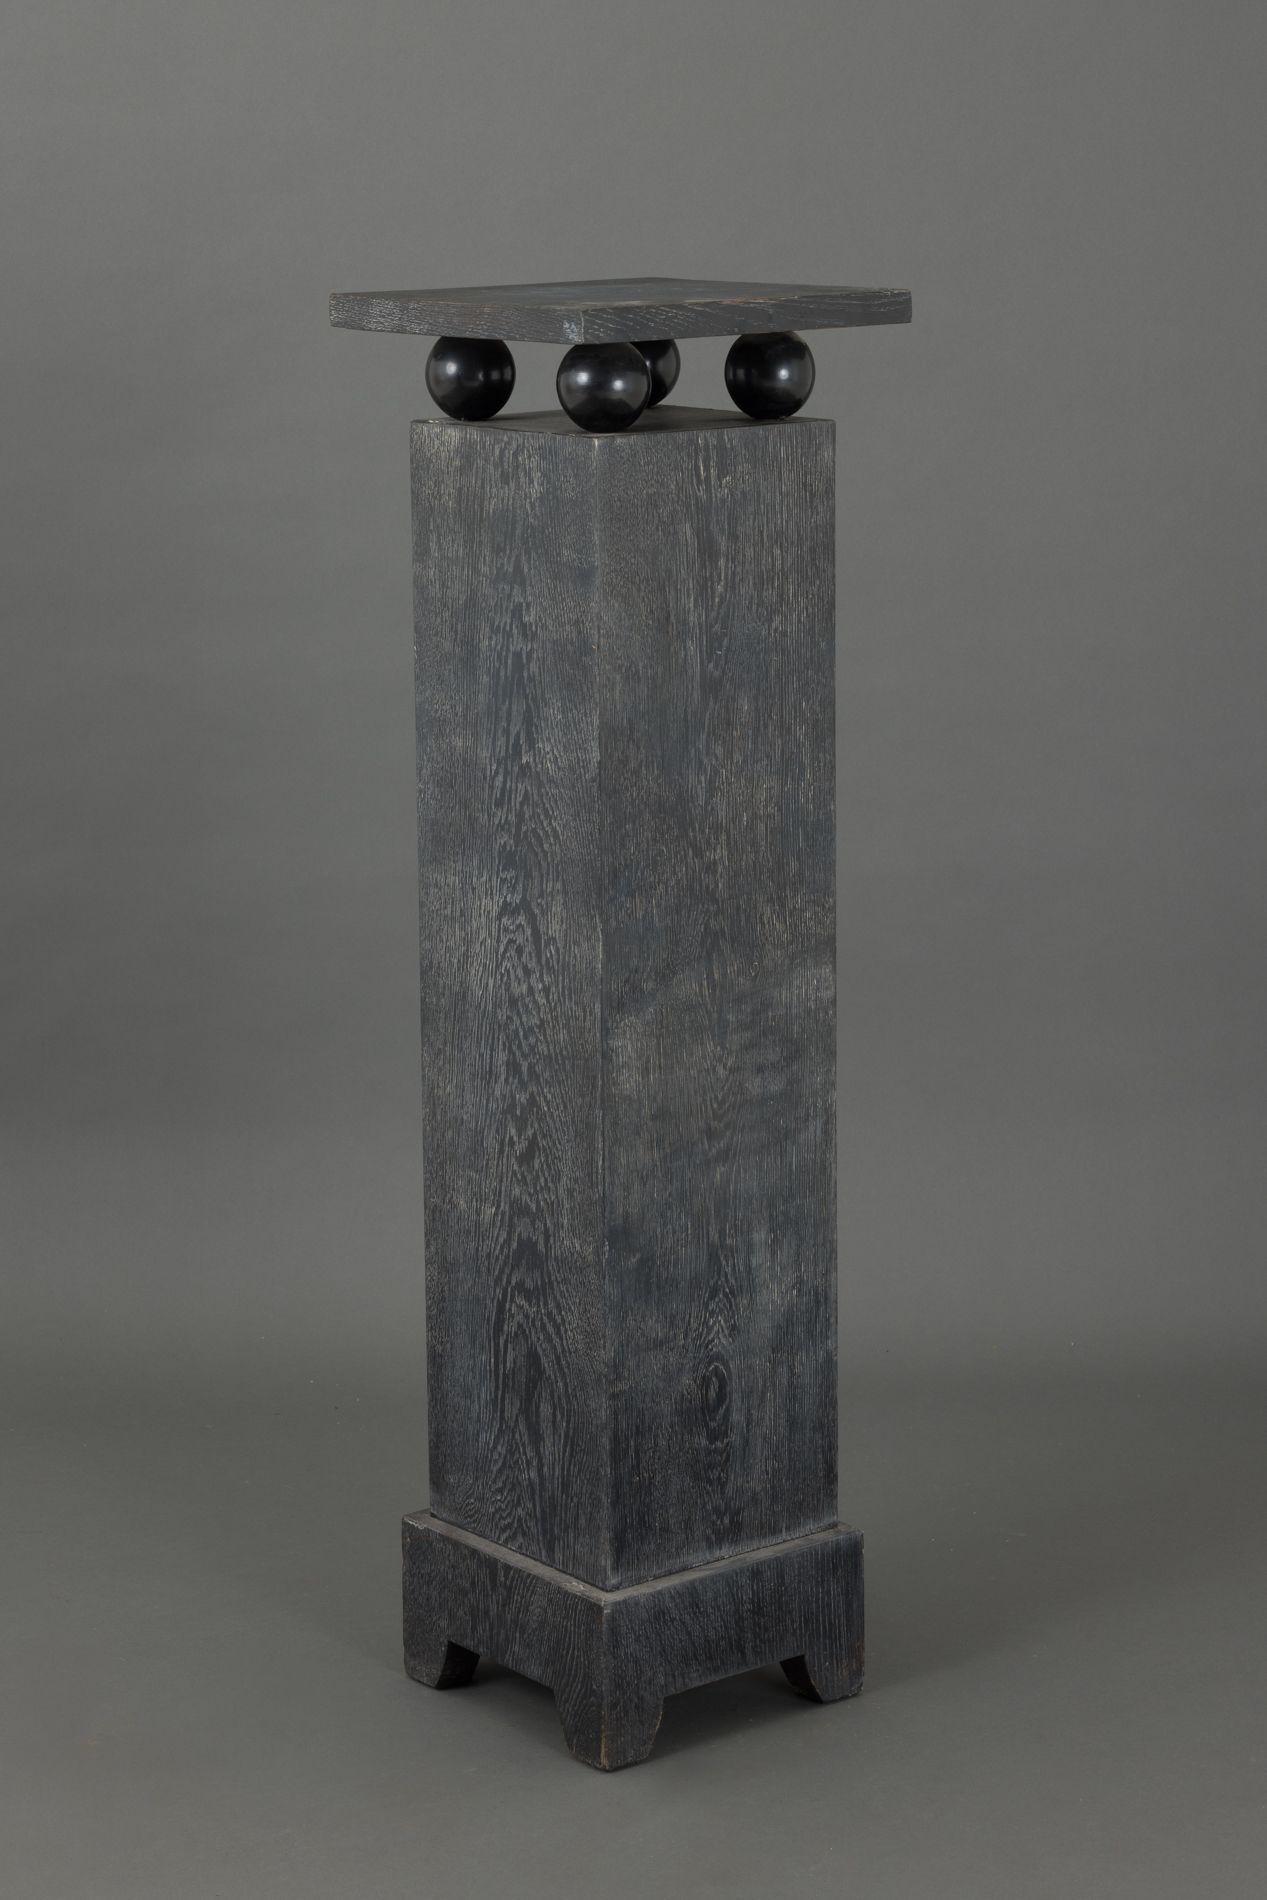 Null 熏黑陶瓷木的四角形轮盘，顶部靠在四个球上。 
尺寸：110 x 31.5 x 31.5厘米